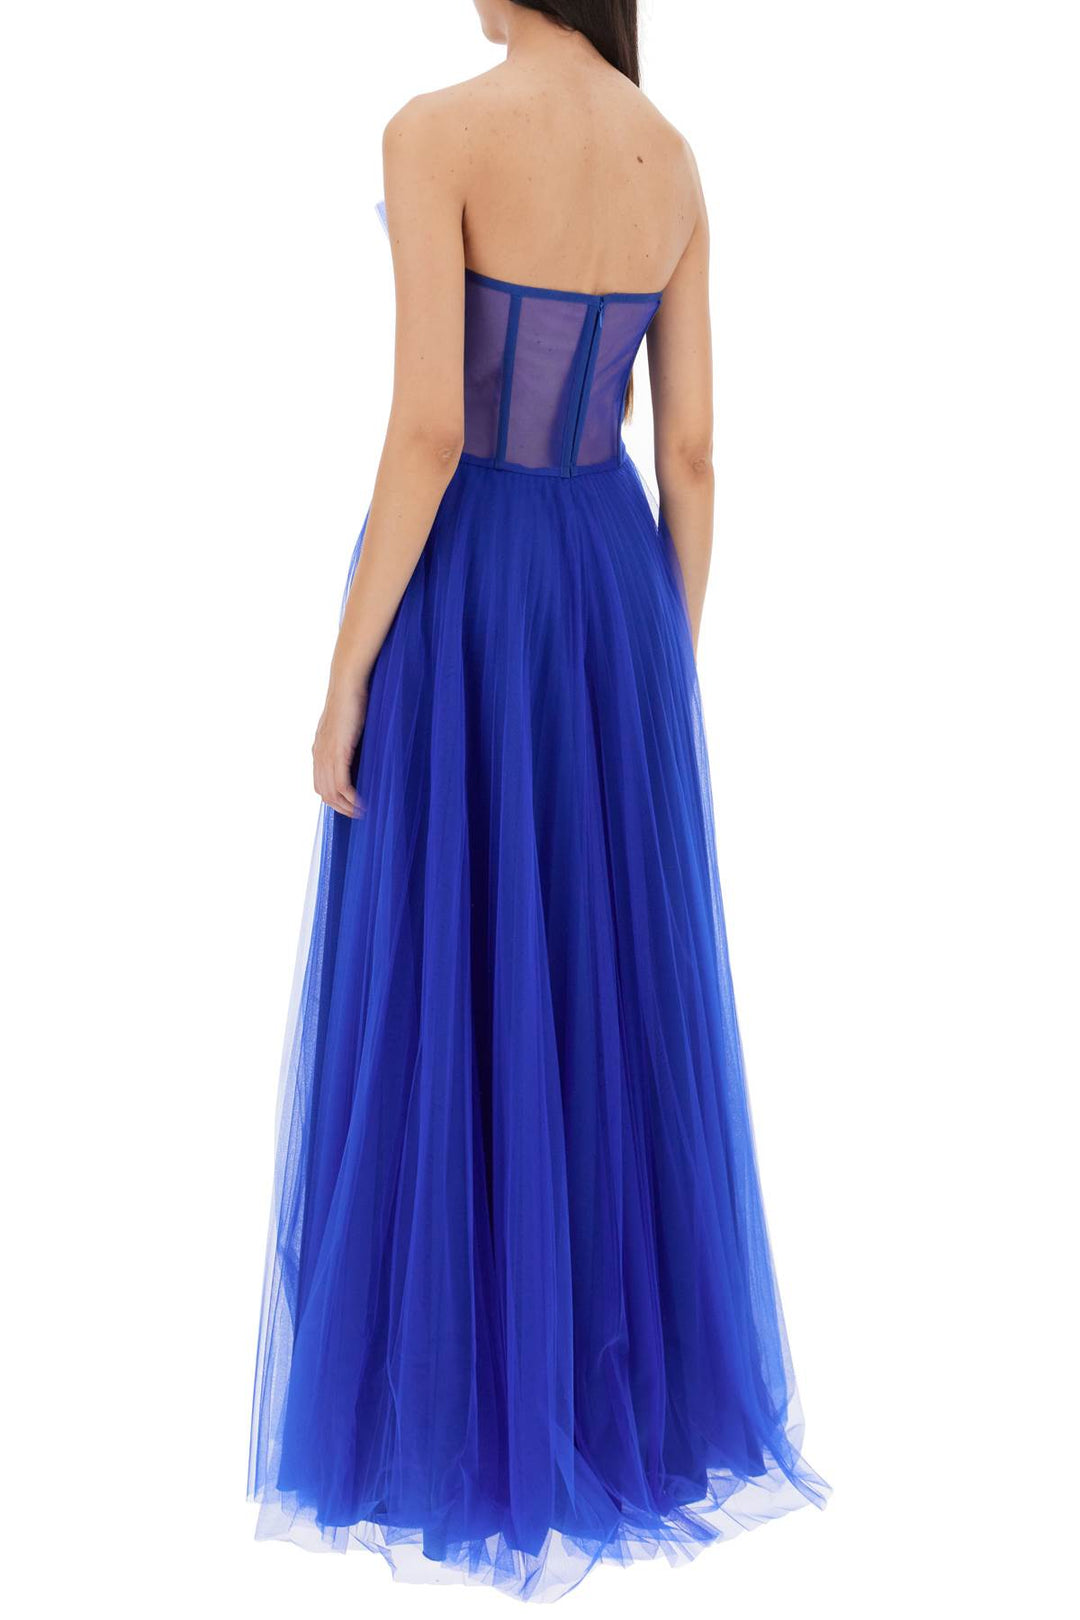 1913 Dresscode Long Bustier Dress   Blu